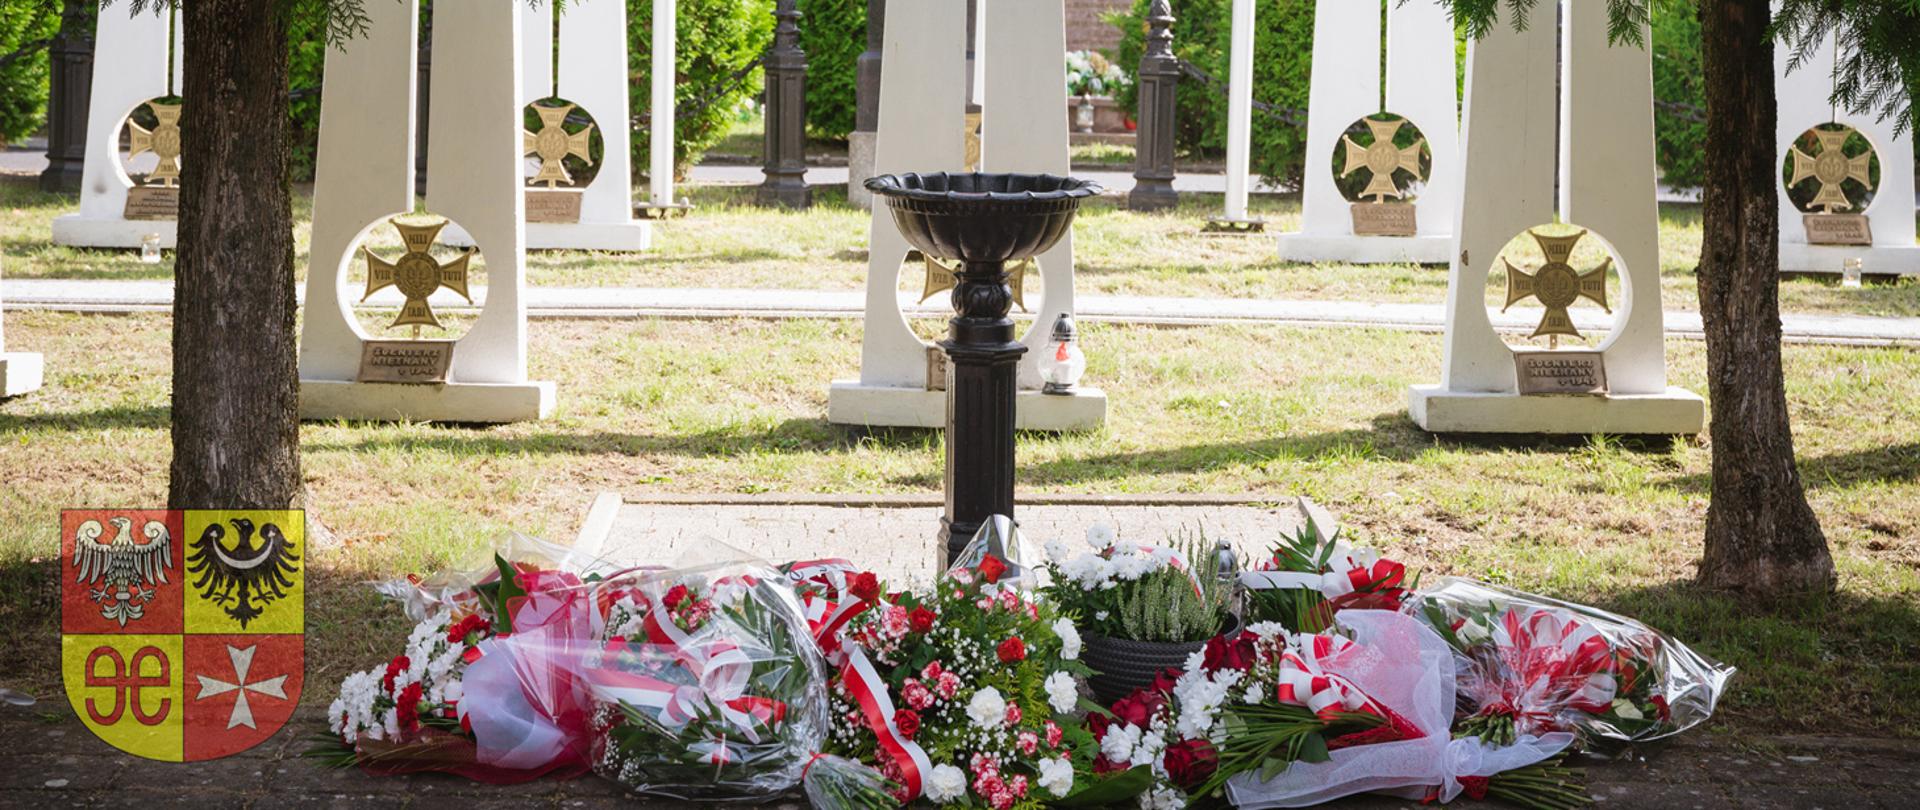 kwiaty pod pomnikiem żołnierzy